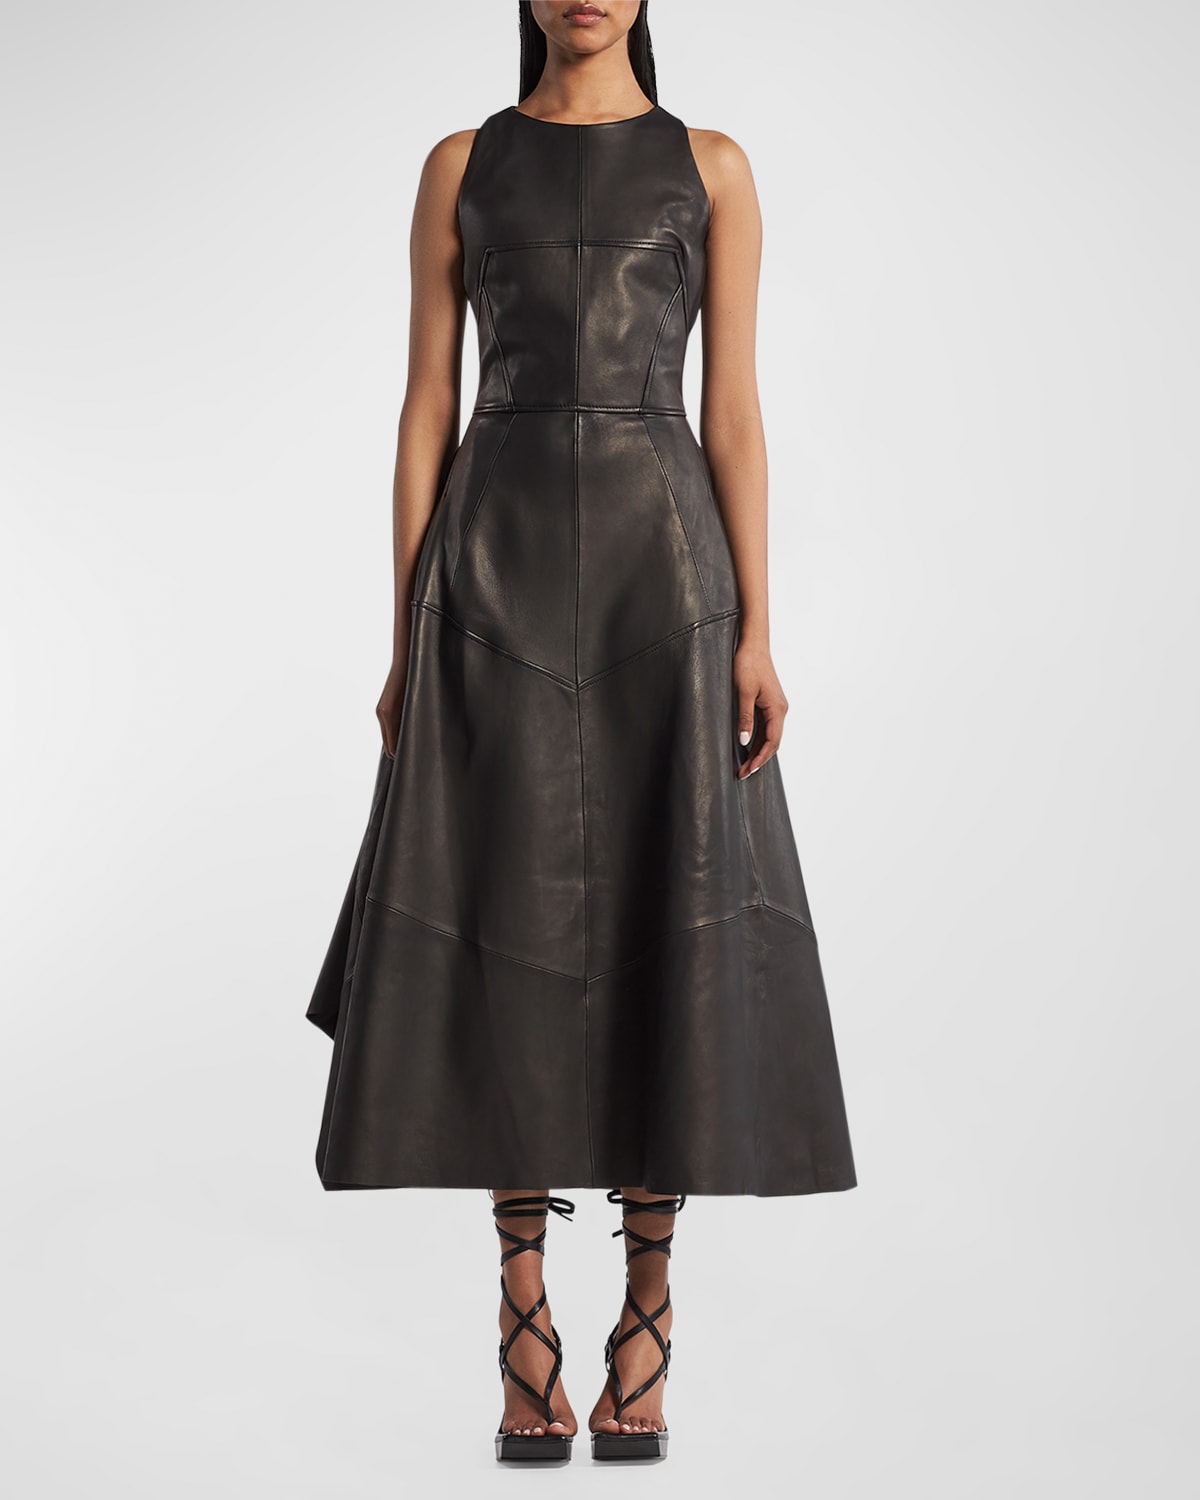 Linden Sleeveless Paneled Leather Midi Dress